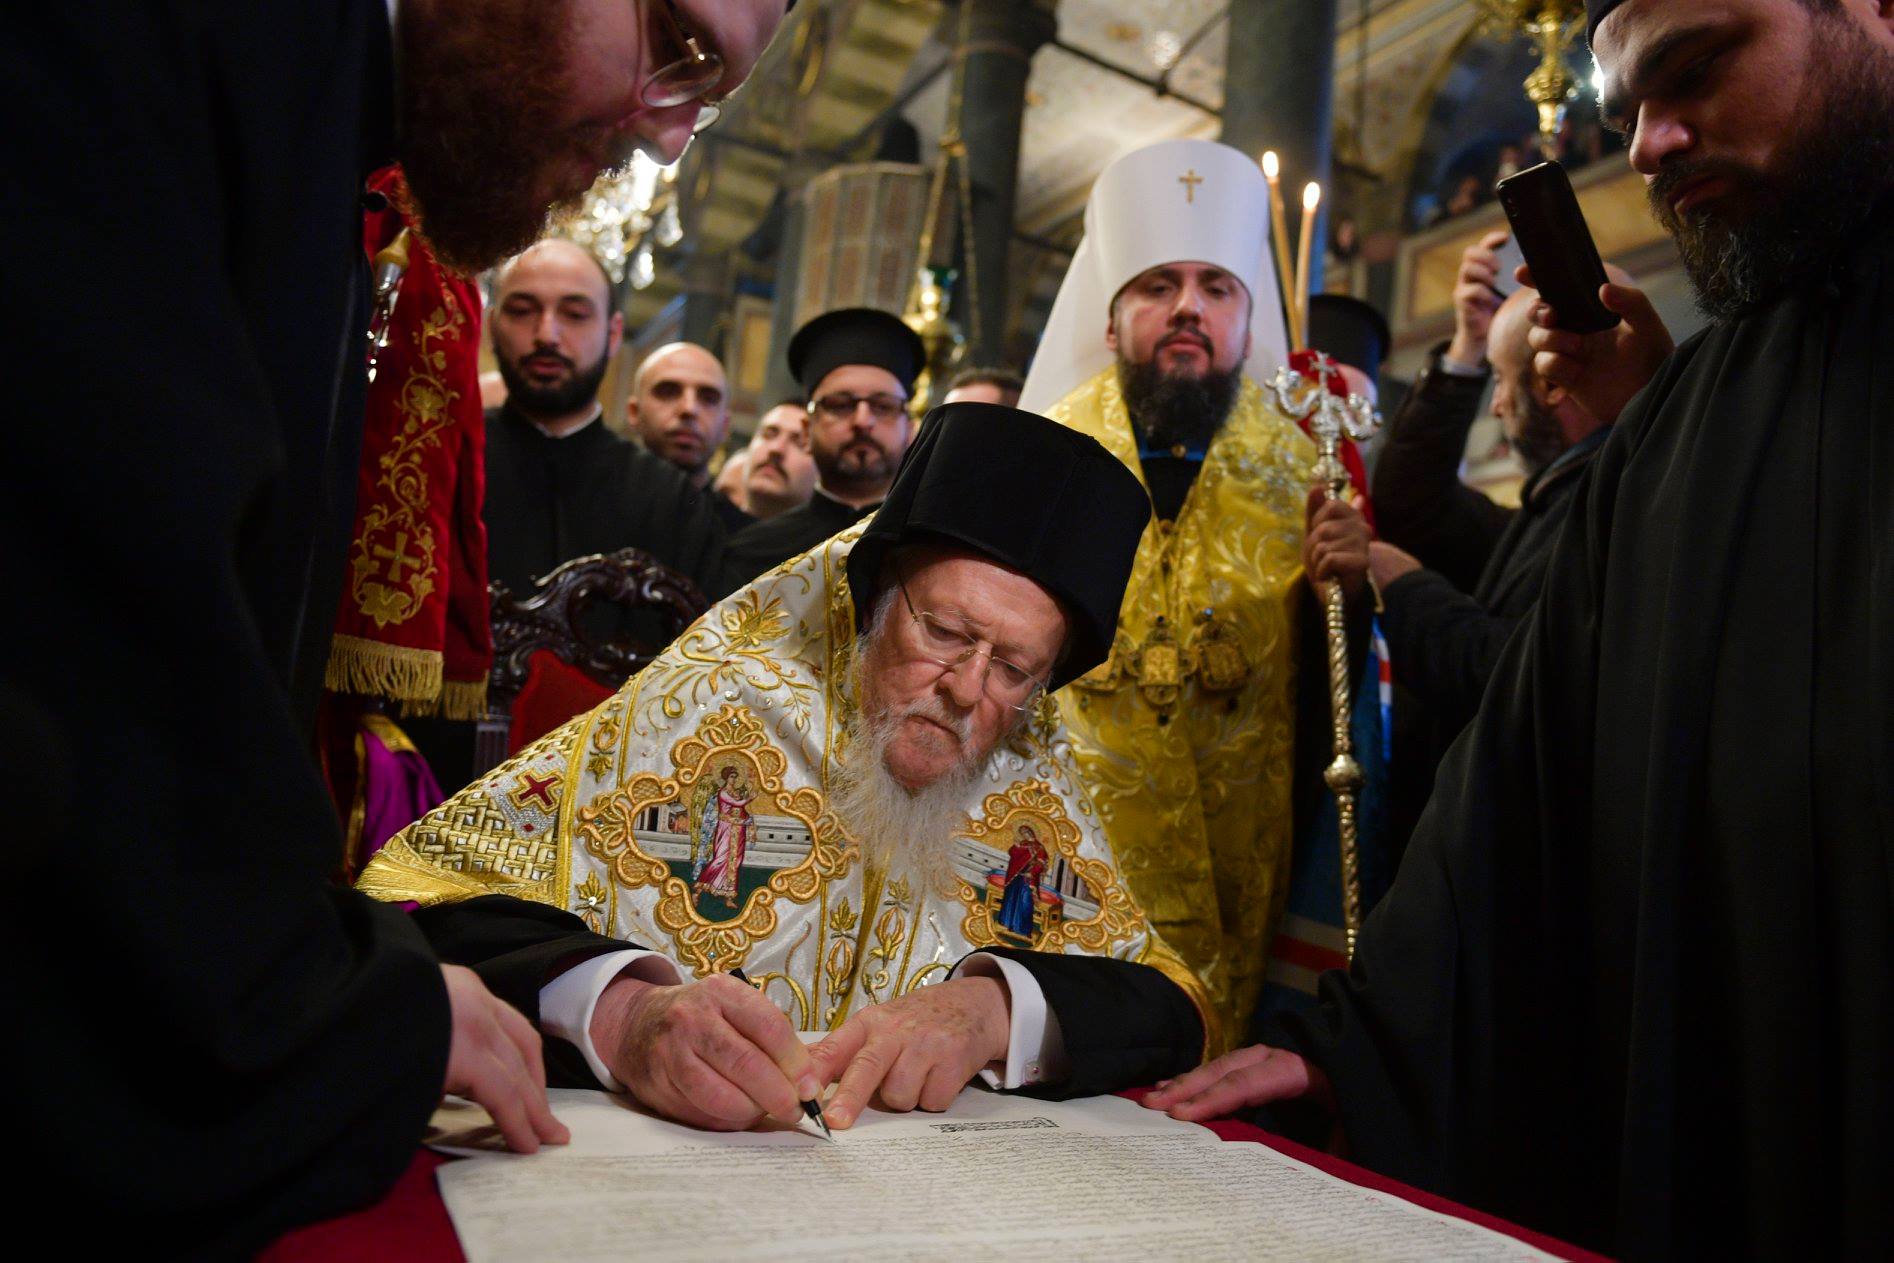 Не ПЦУ: Варфоломей переименовал новосозданную украинскую церковь - СМИ опубликовали новое название